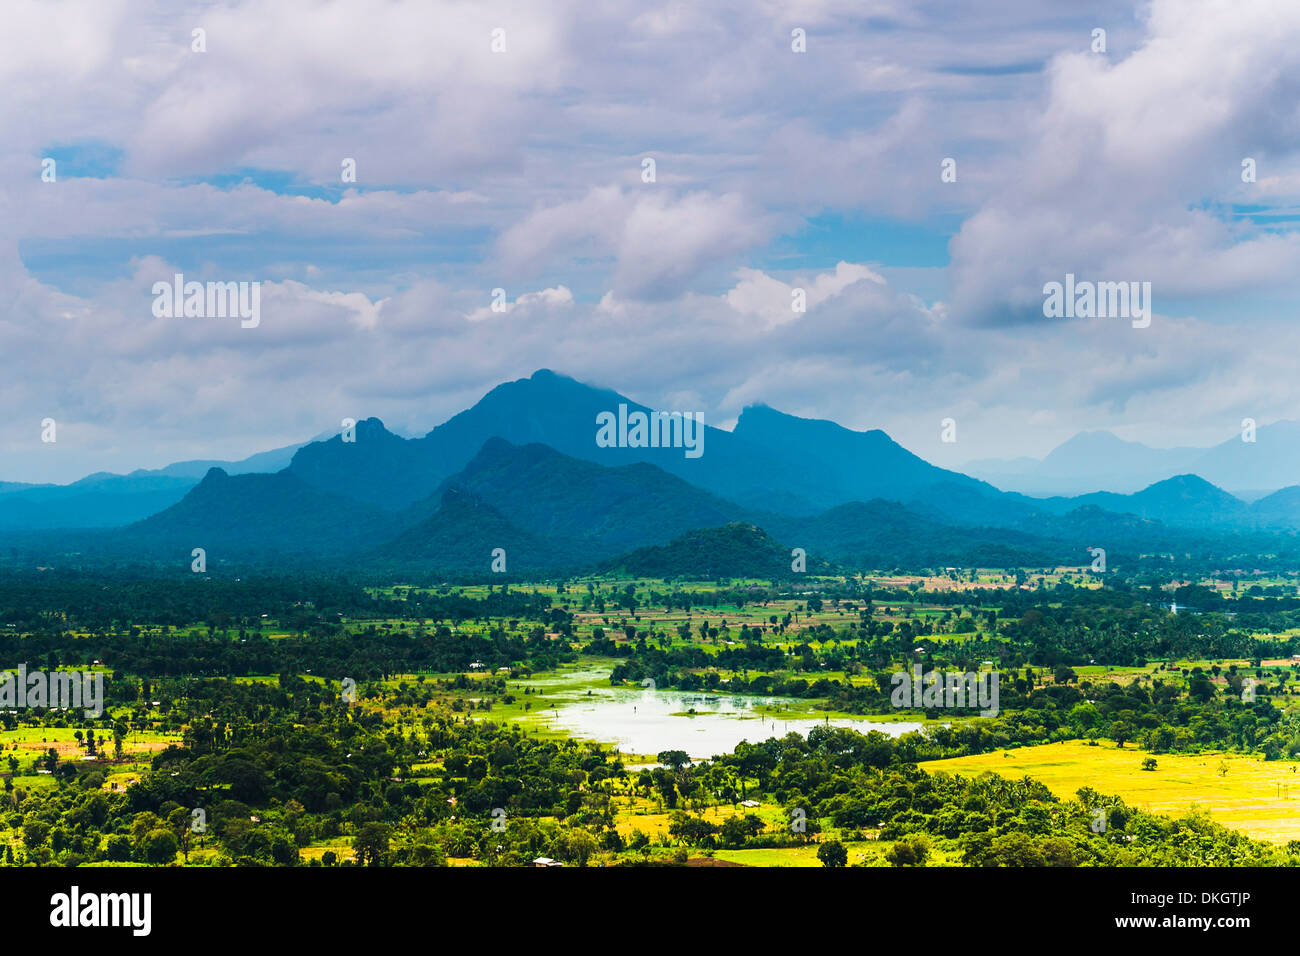 Sri Lanka paisaje, tomada desde la parte superior de la Fortaleza Sigiriya Rock (Roca León), Sigiriya, Sri Lanka, Asia Foto de stock